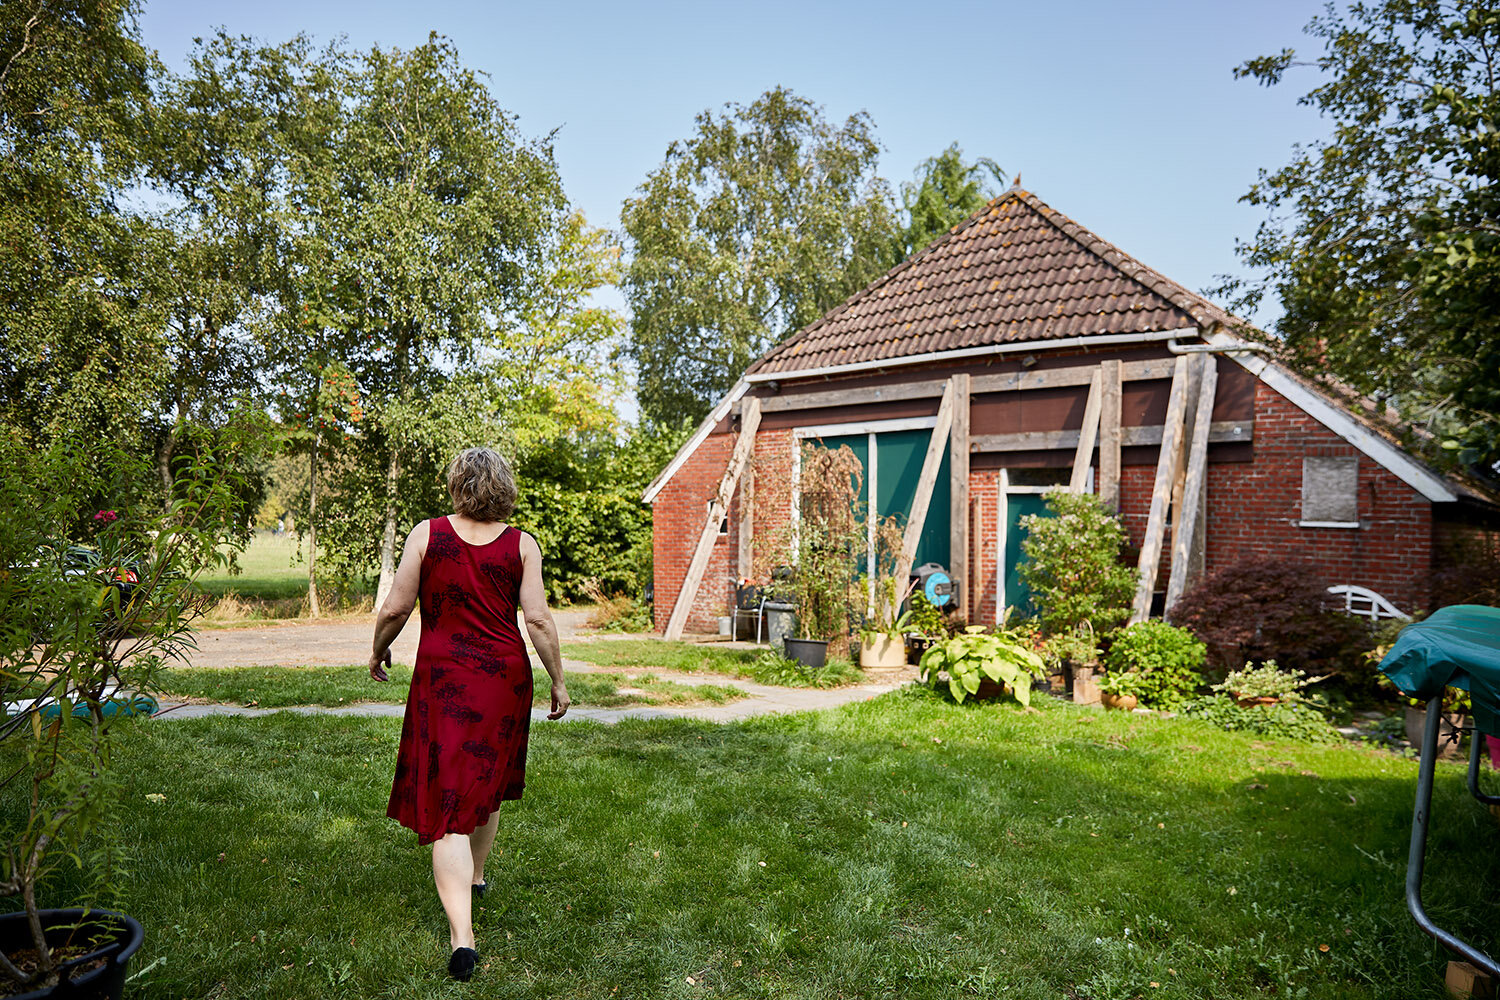 Nicole van Eijkern's home